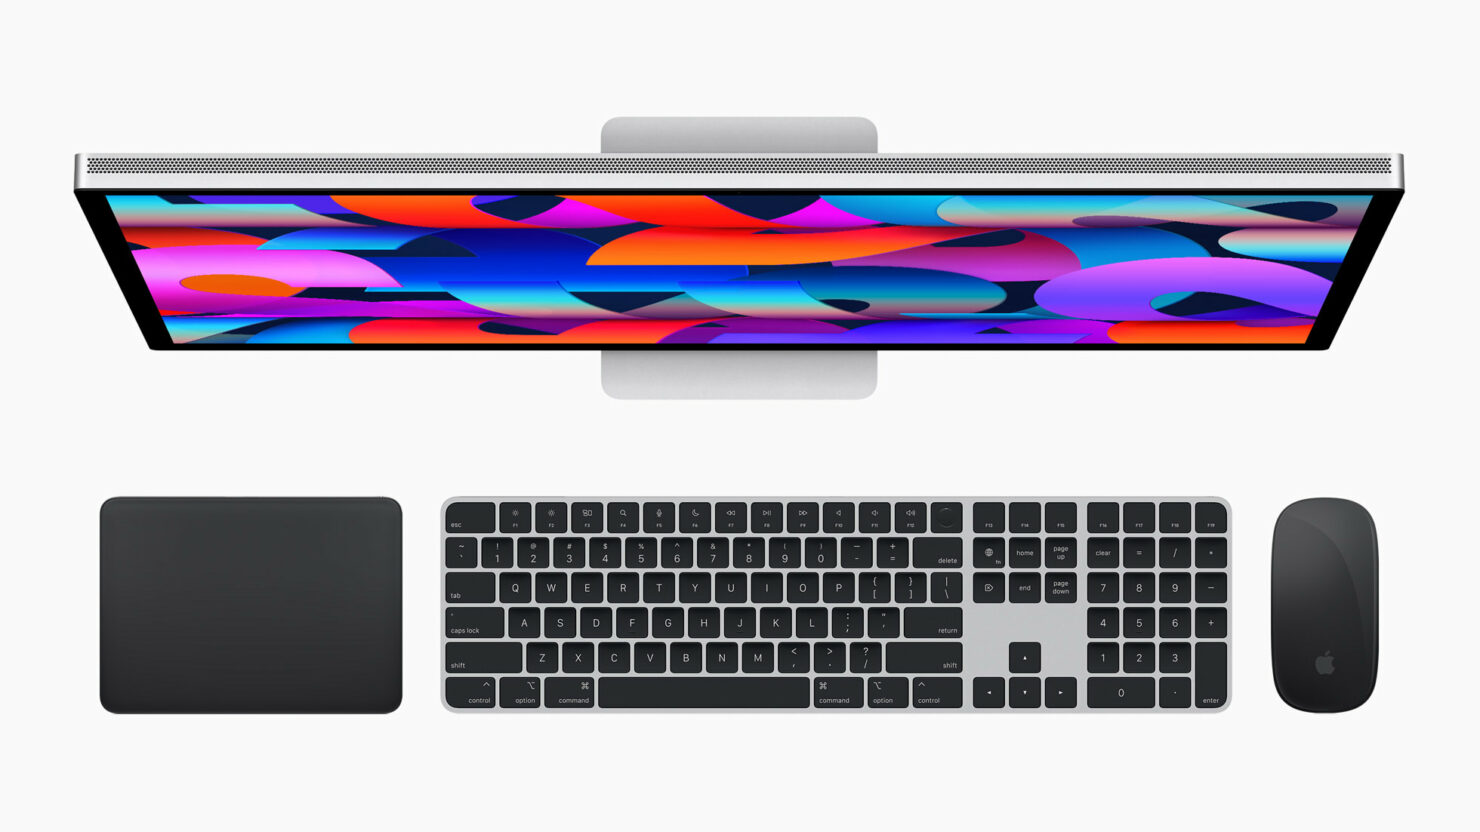 Appleが新しいMagicKeyboard、Magic Trackpad、MagicMouseをブラックとシルバーで発表 - JA Atsit